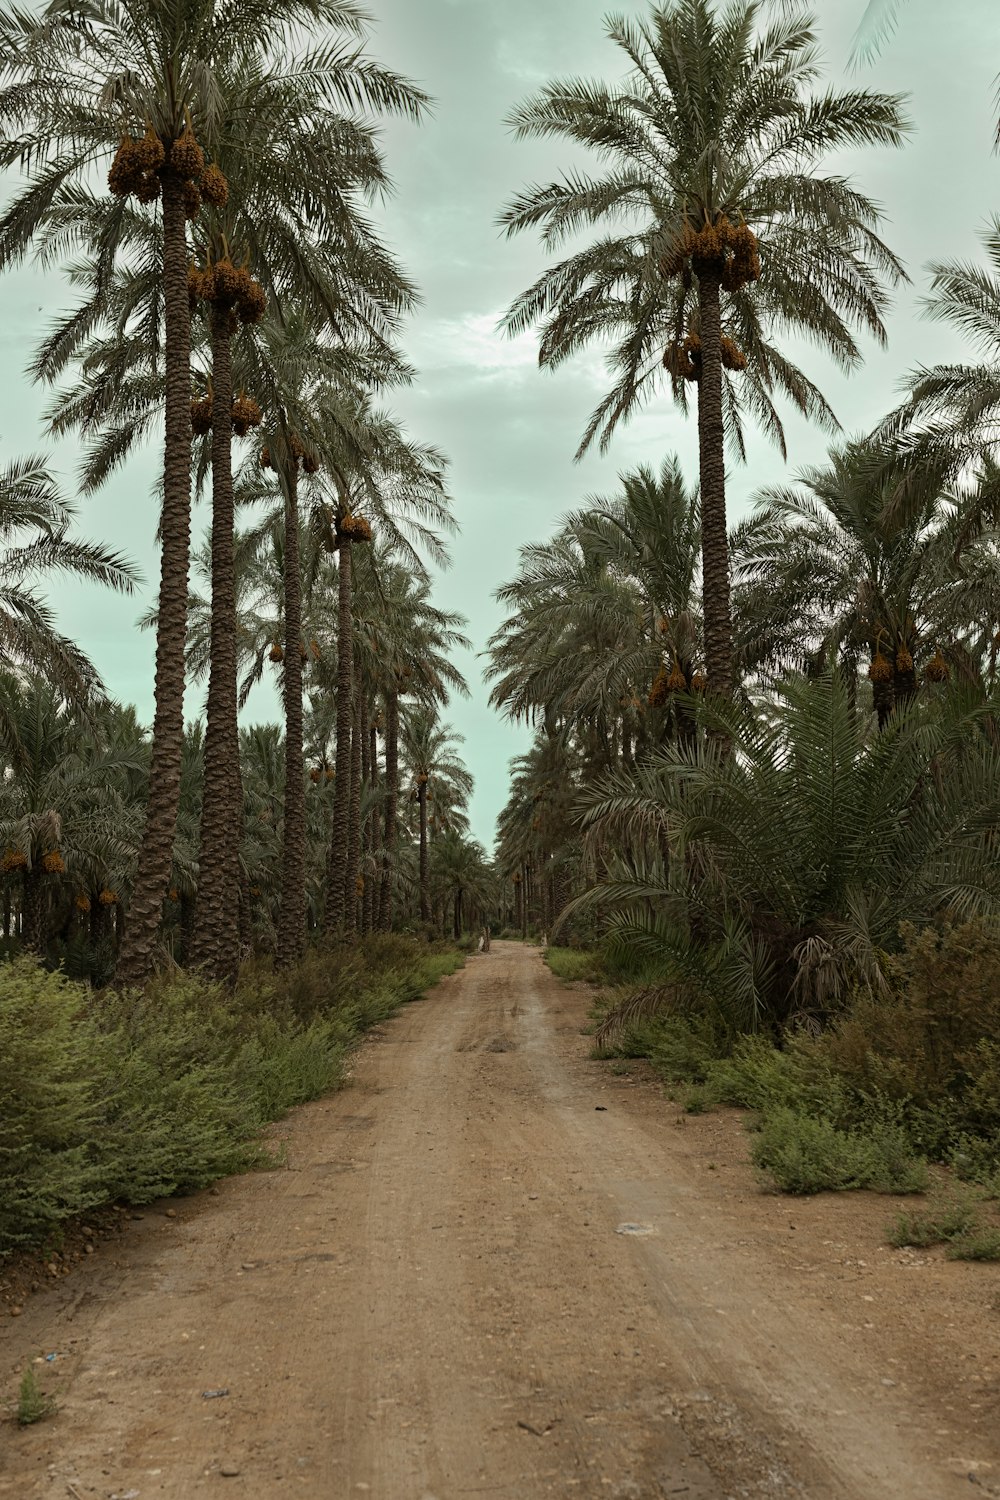 Eine unbefestigte Straße mit Palmen auf beiden Seiten